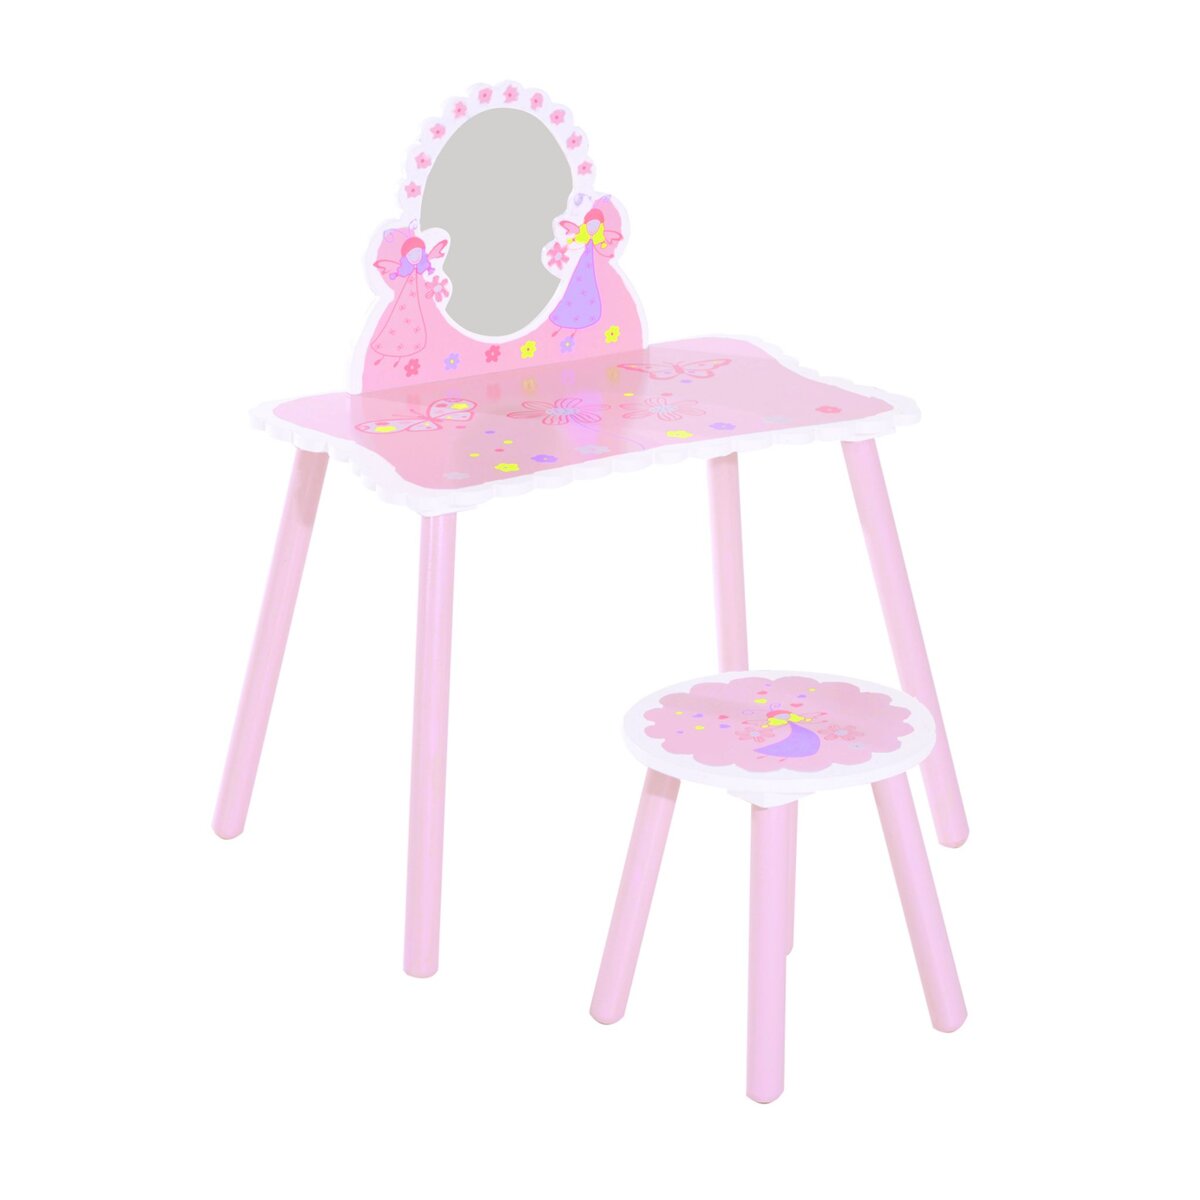 HOMCOM Coiffeuse enfant - tabouret inclus - table de maquillage dim. 59L x 39l x 77H cm - motifs fées, papillons, fleurs - bois de pin, MDF - rose blanc